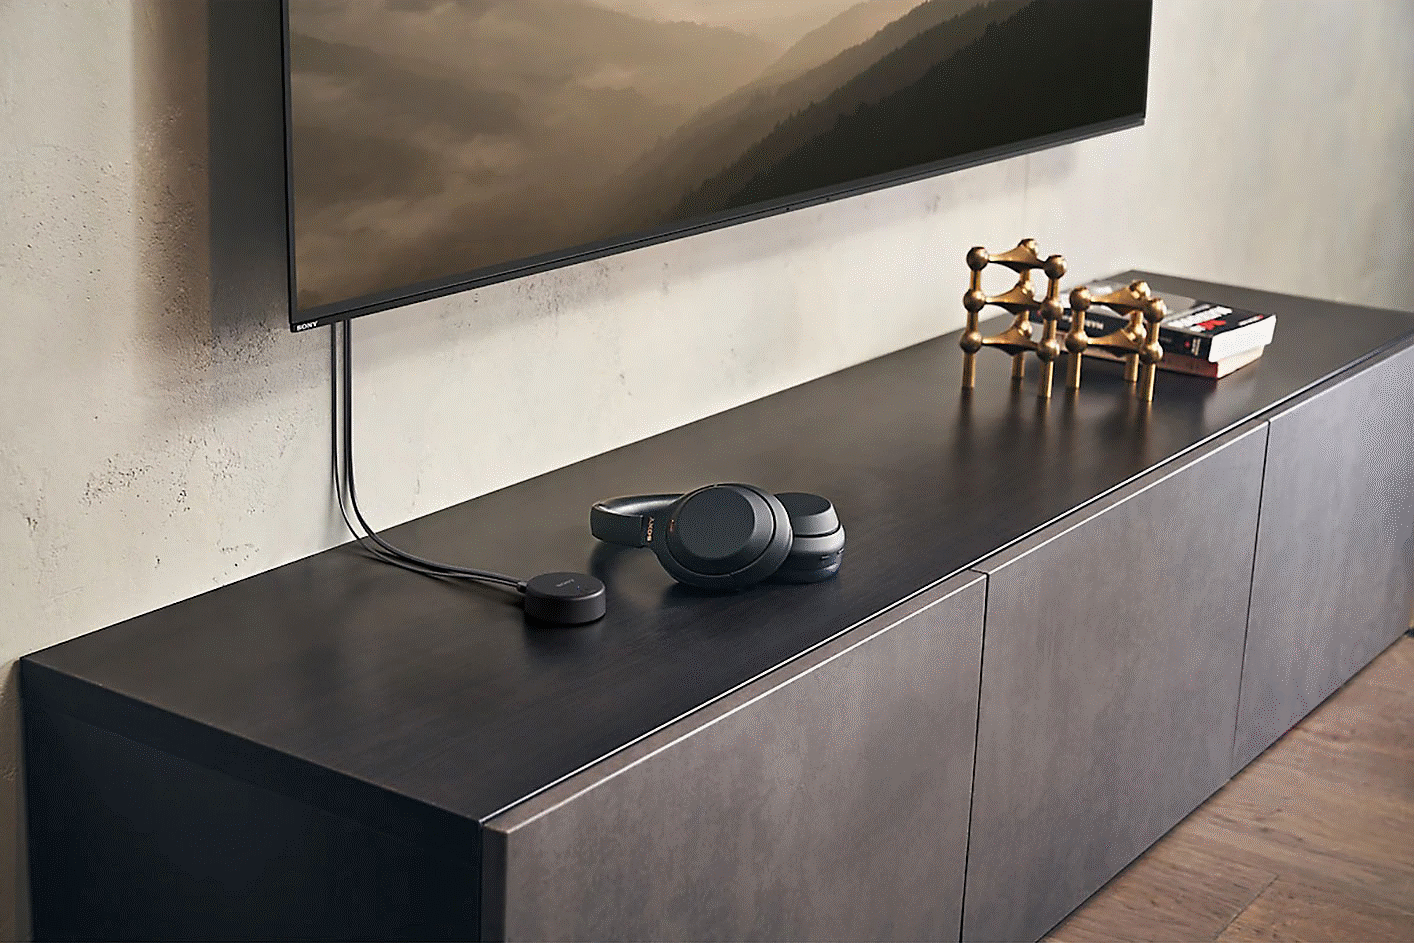 Bild der schwarzen WH-CH720 Kopfhörer von Sony auf einem Fernsehschrank unter einem wandbefestigten Fernseher